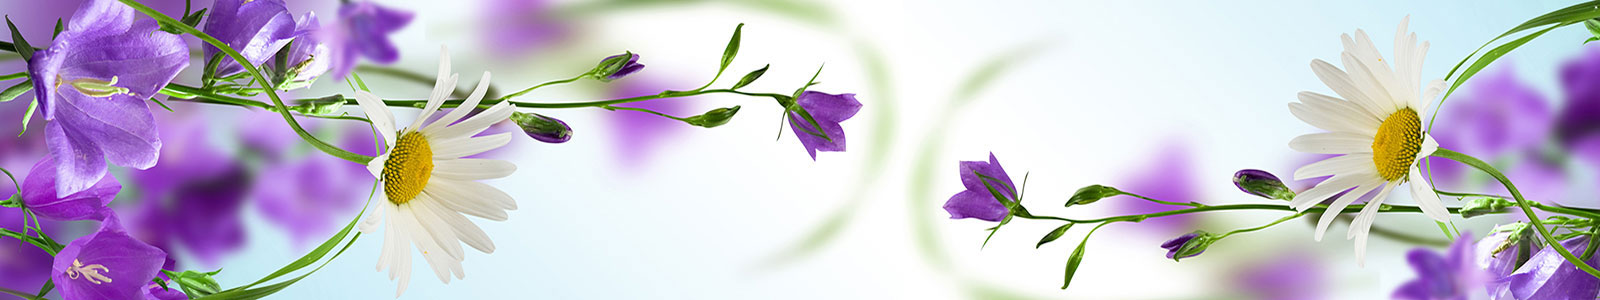 №1870 - Красивое сочетание белой ромашки и фиолетовых полевых цветов